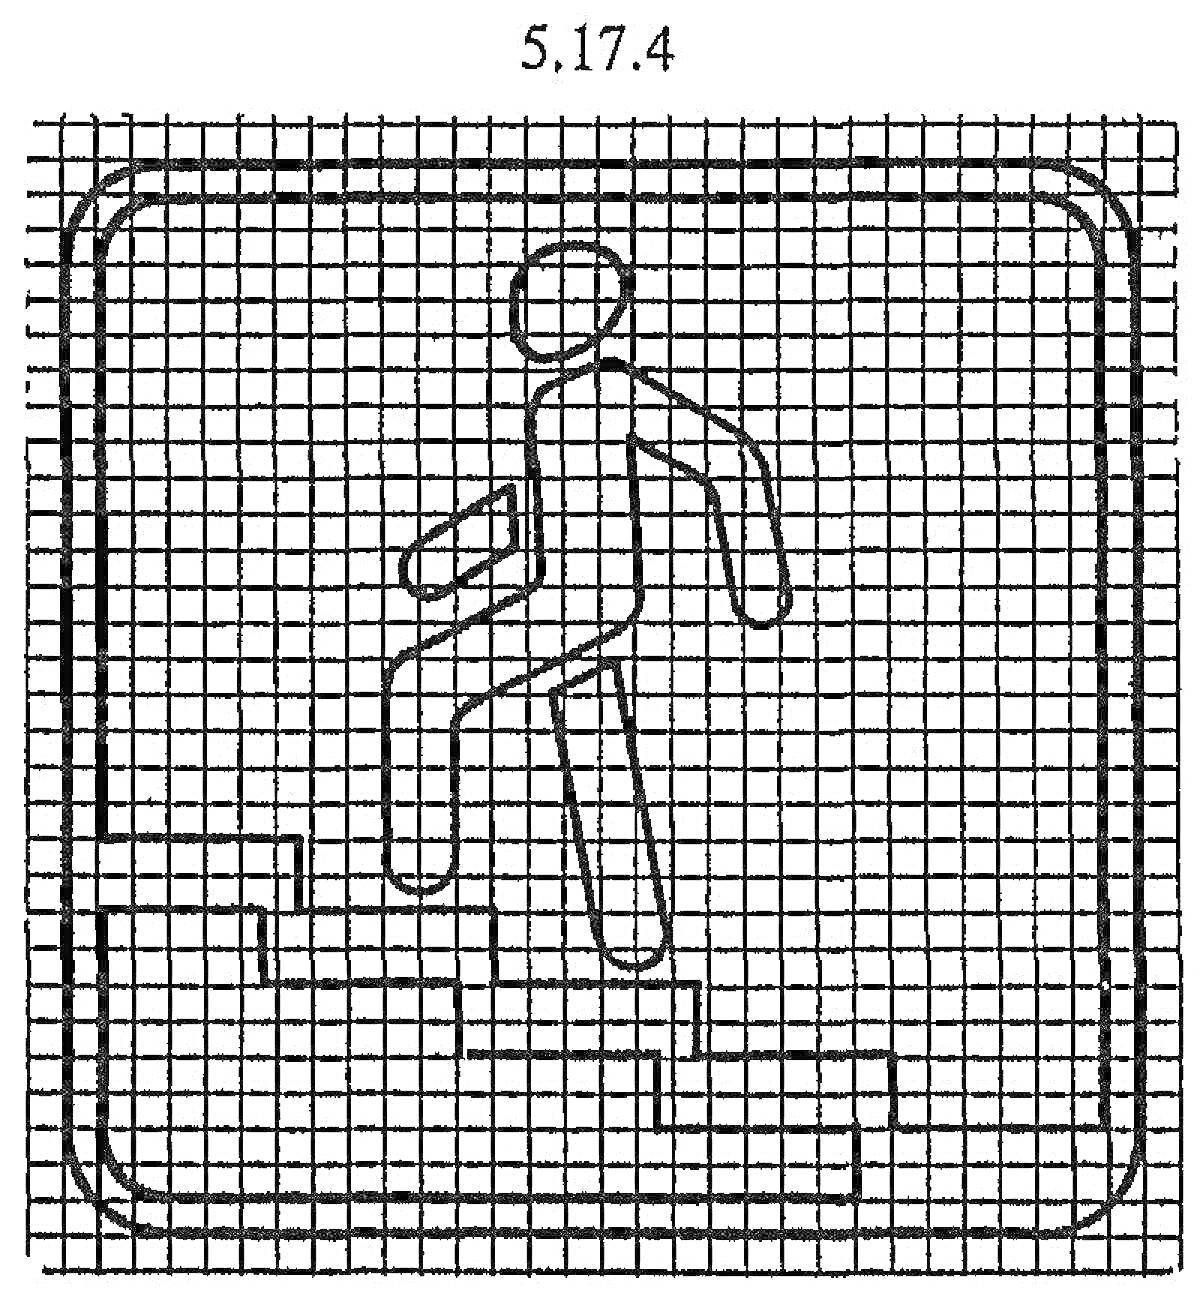 Раскраска Знак подземного пешеходного перехода с фигурой человека на лестнице в квадратной рамке с закруглёнными углами и сетчатым фоном